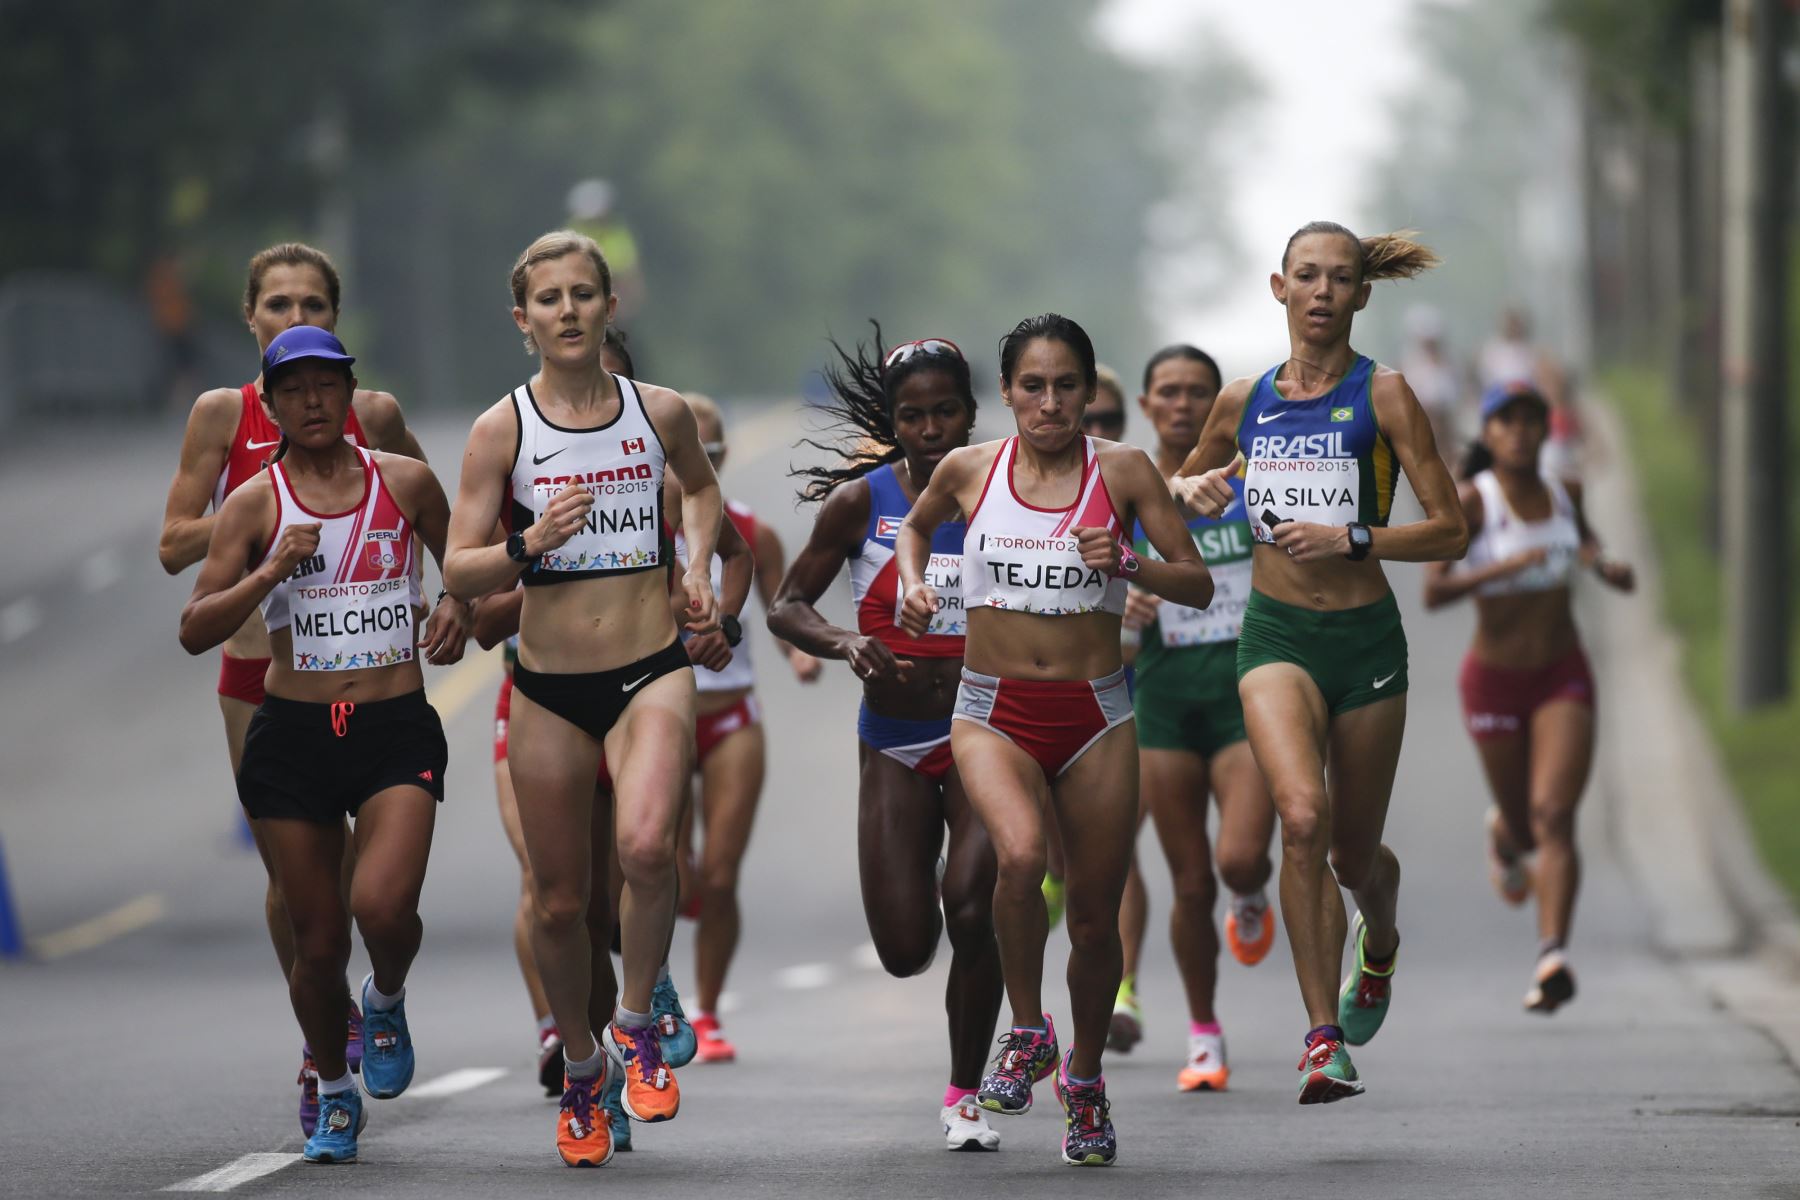 La brasileña Adriana da Silva (R), la peruana Gladys Tejeda (centroR) La canadiense Rachel Hannah (CentroL) La peruana Ines Melchor (L) y otros atletas corren durante la maratón femenina en los Juegos Panamericanos en Toronto, Canadá,  2015. Foto: AFP